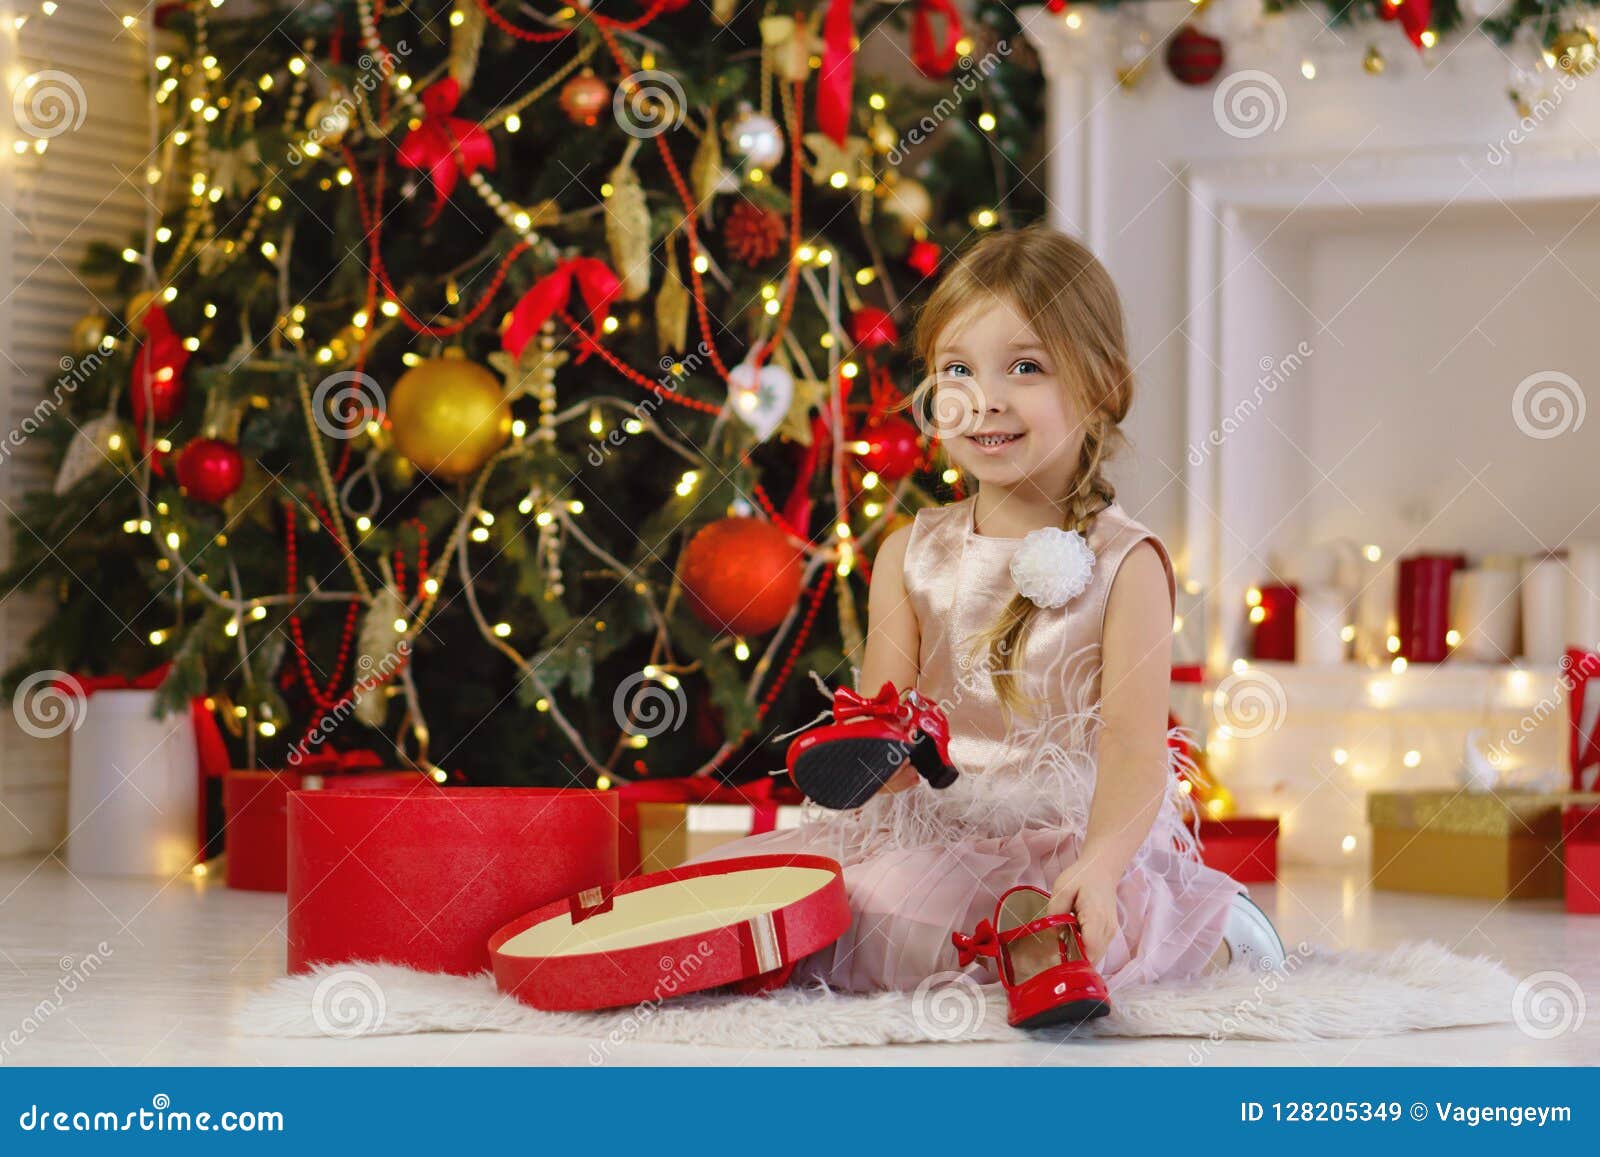 Little Girl Celebrates Christmas Stock Image - Image of decoration ...